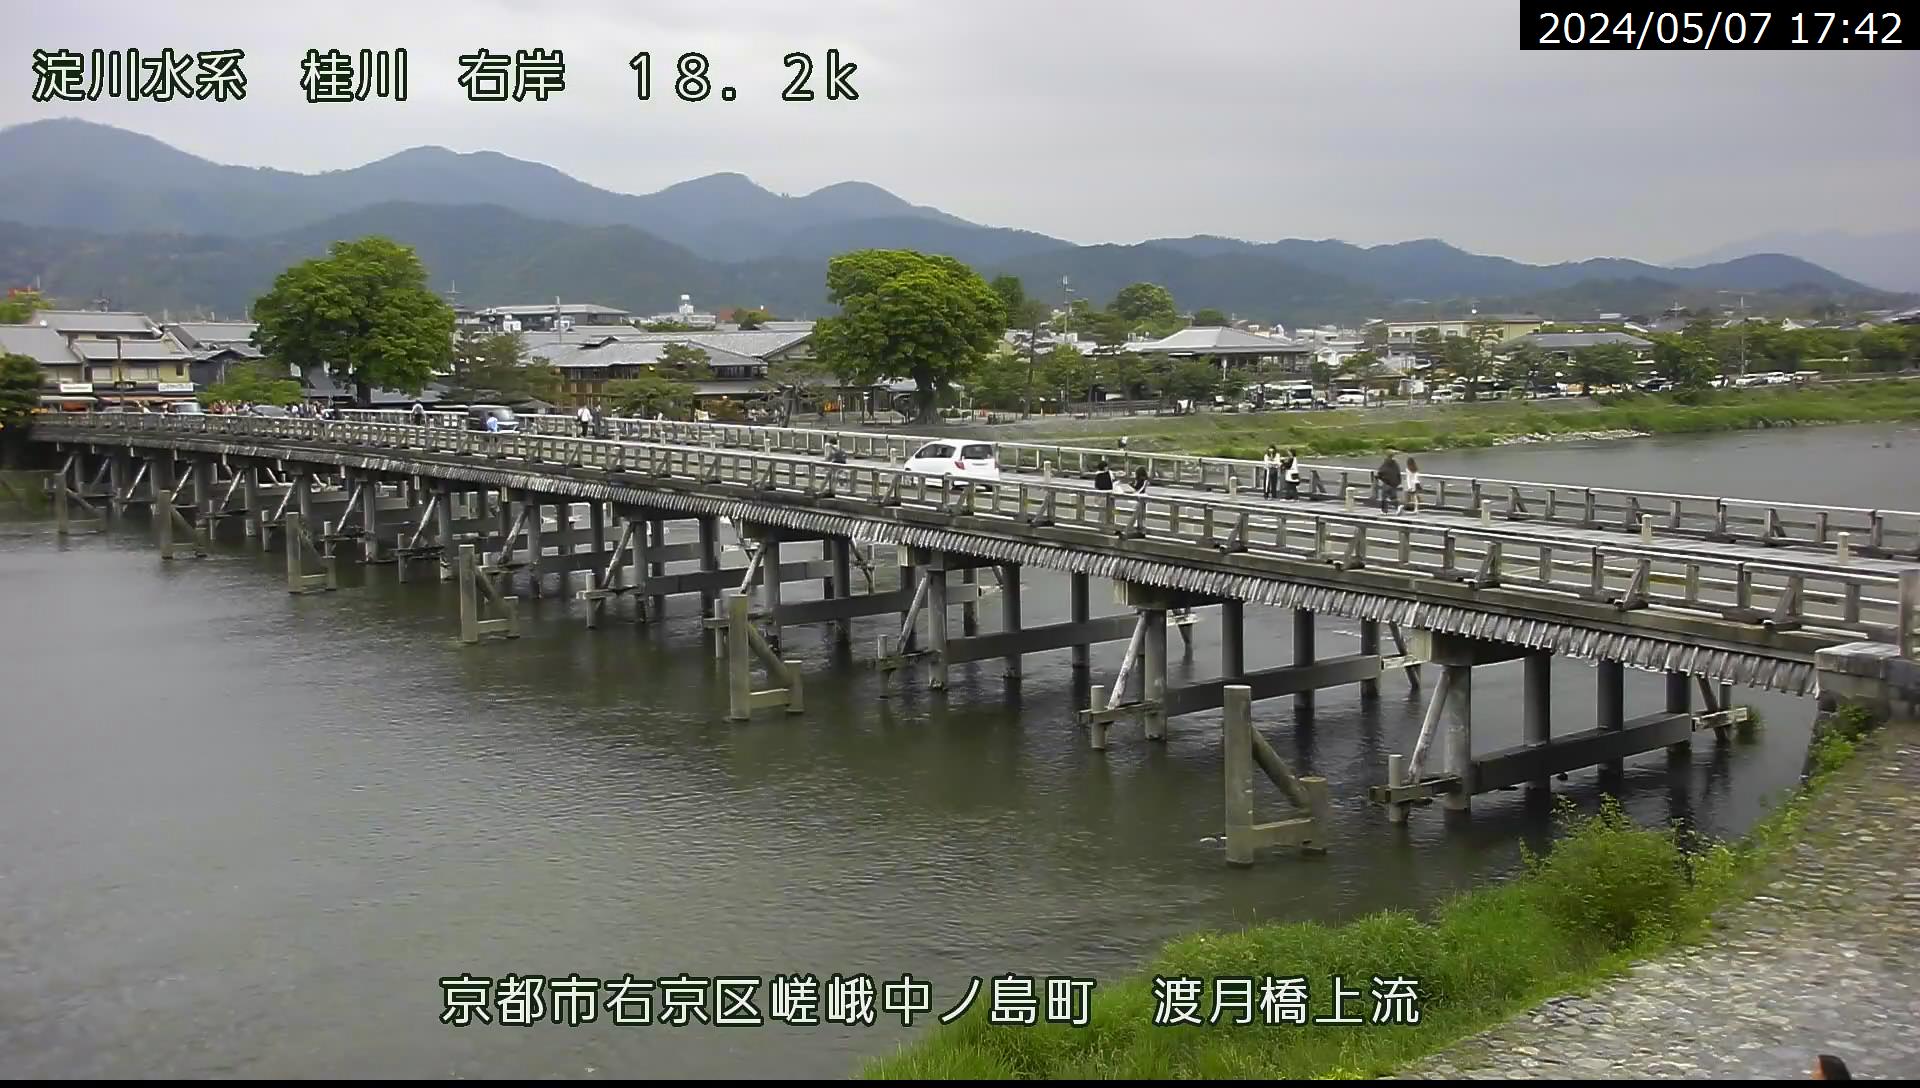 嵐山渡月橋(右岸)の画像